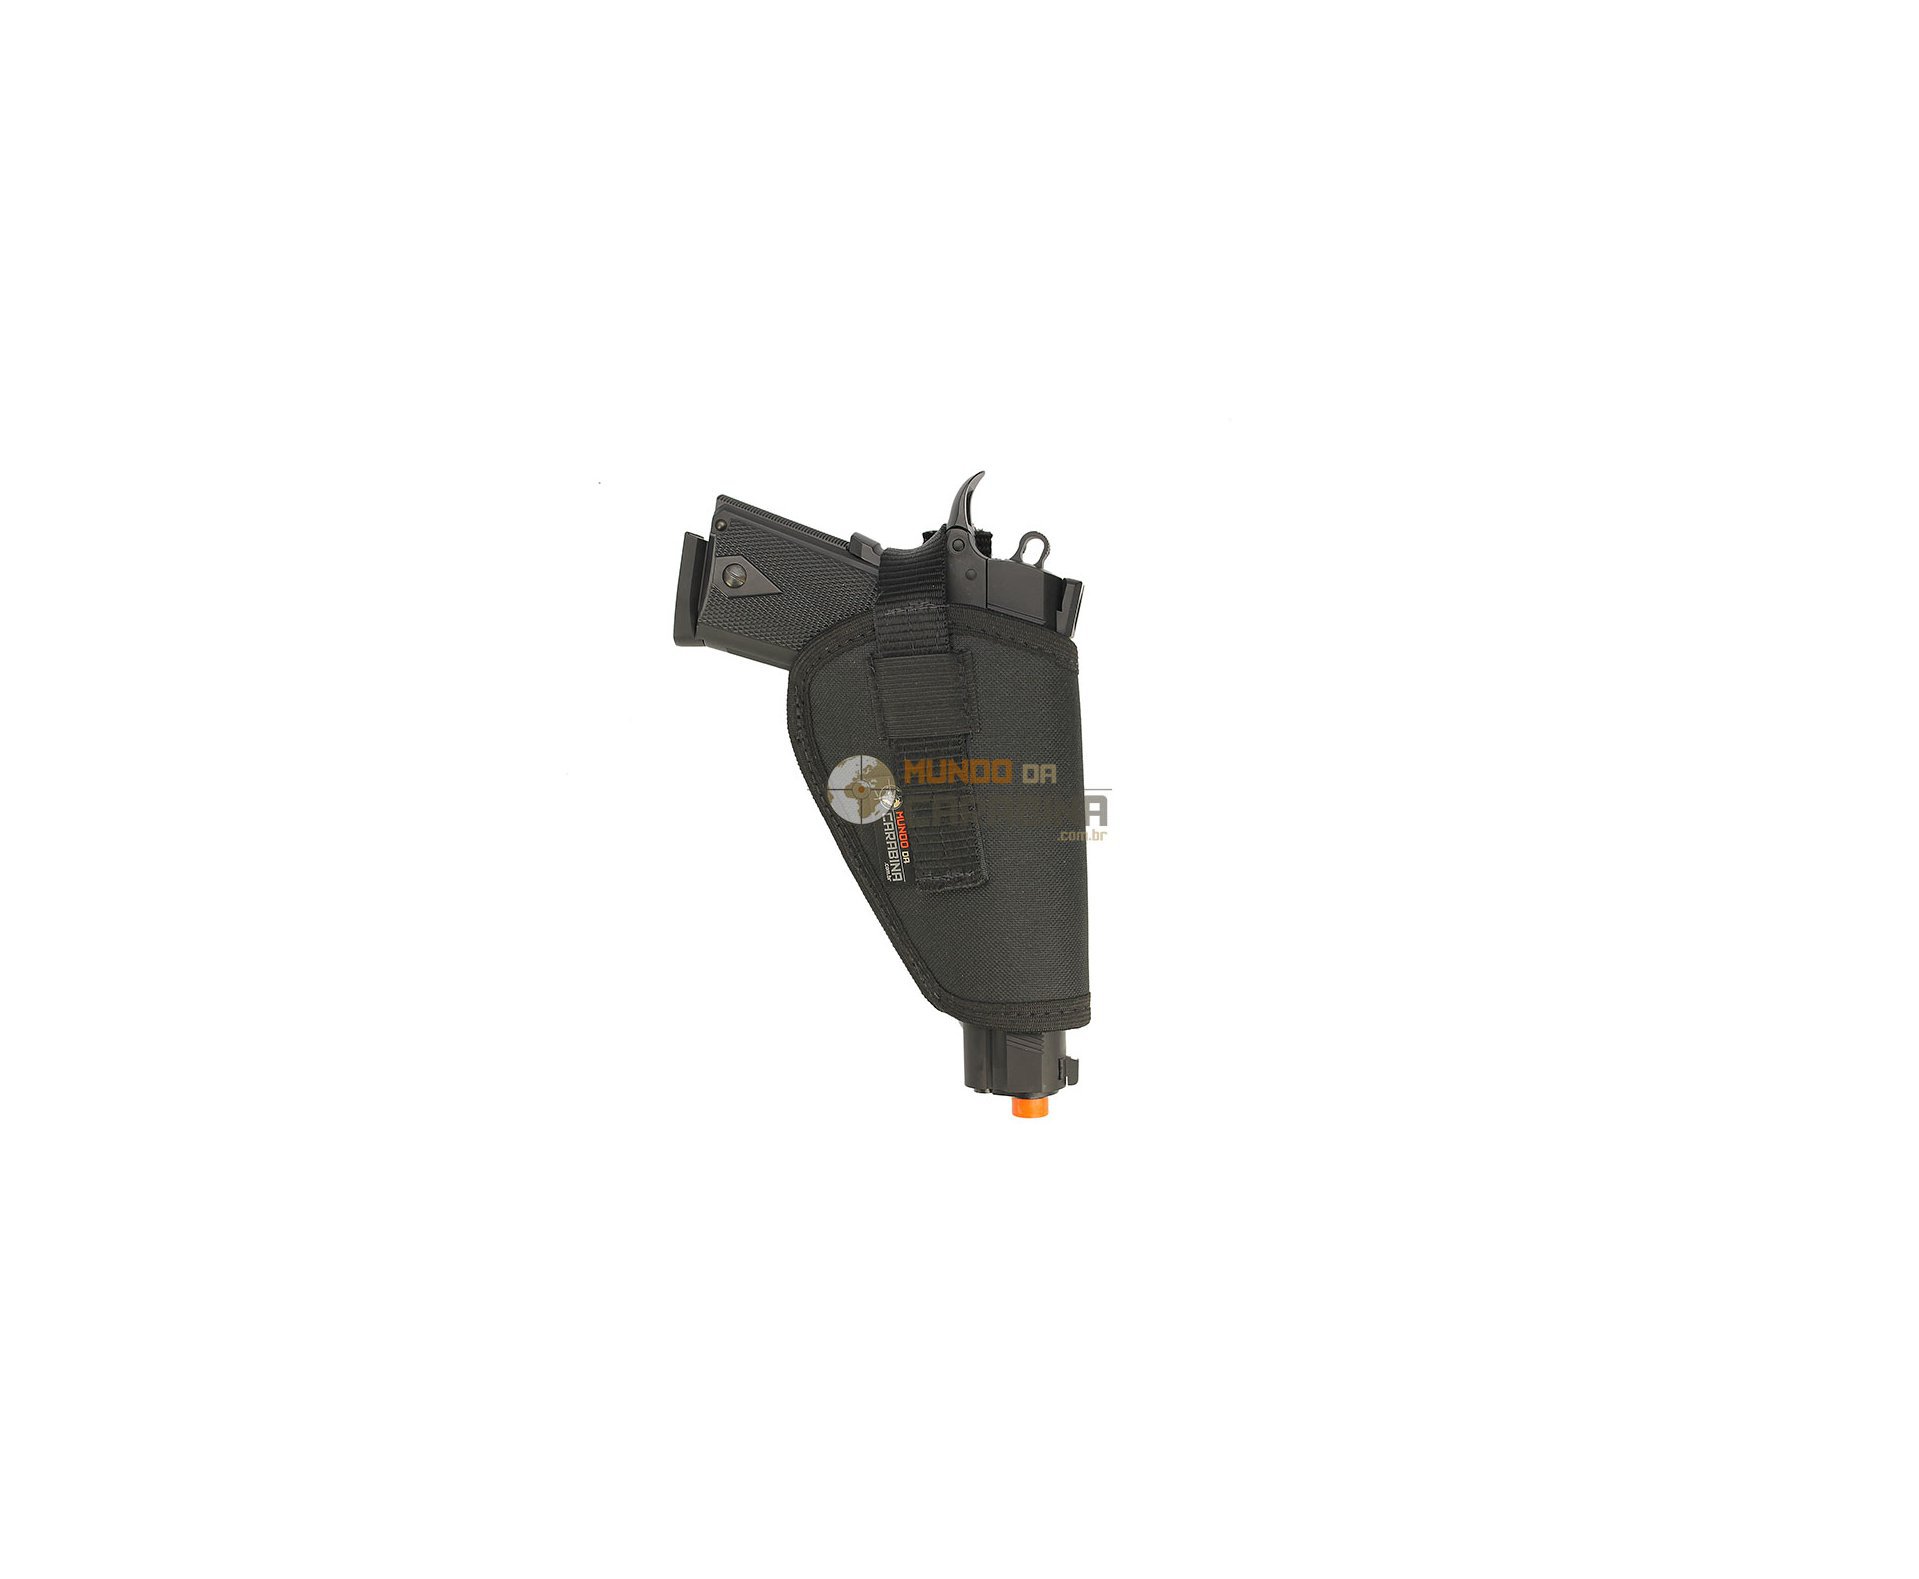 Pistola De Airsoft Eletrica Usp Bivolt + Esferas 0,20g + Case Deluxe + Coldre - Cyma